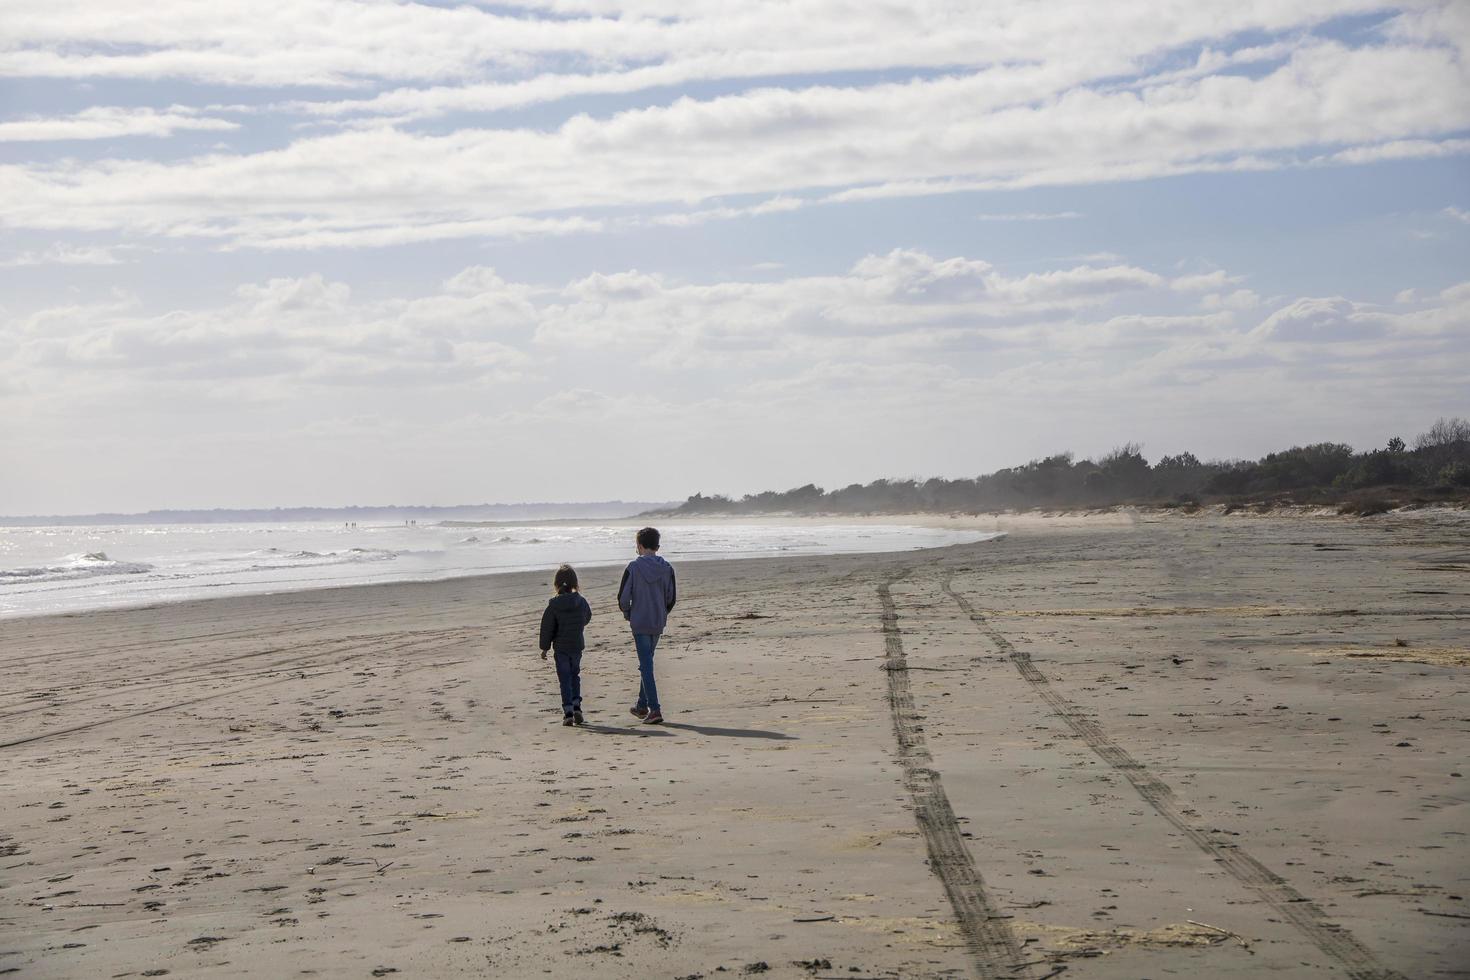 hermano y hermana caminando en una playa de arena foto